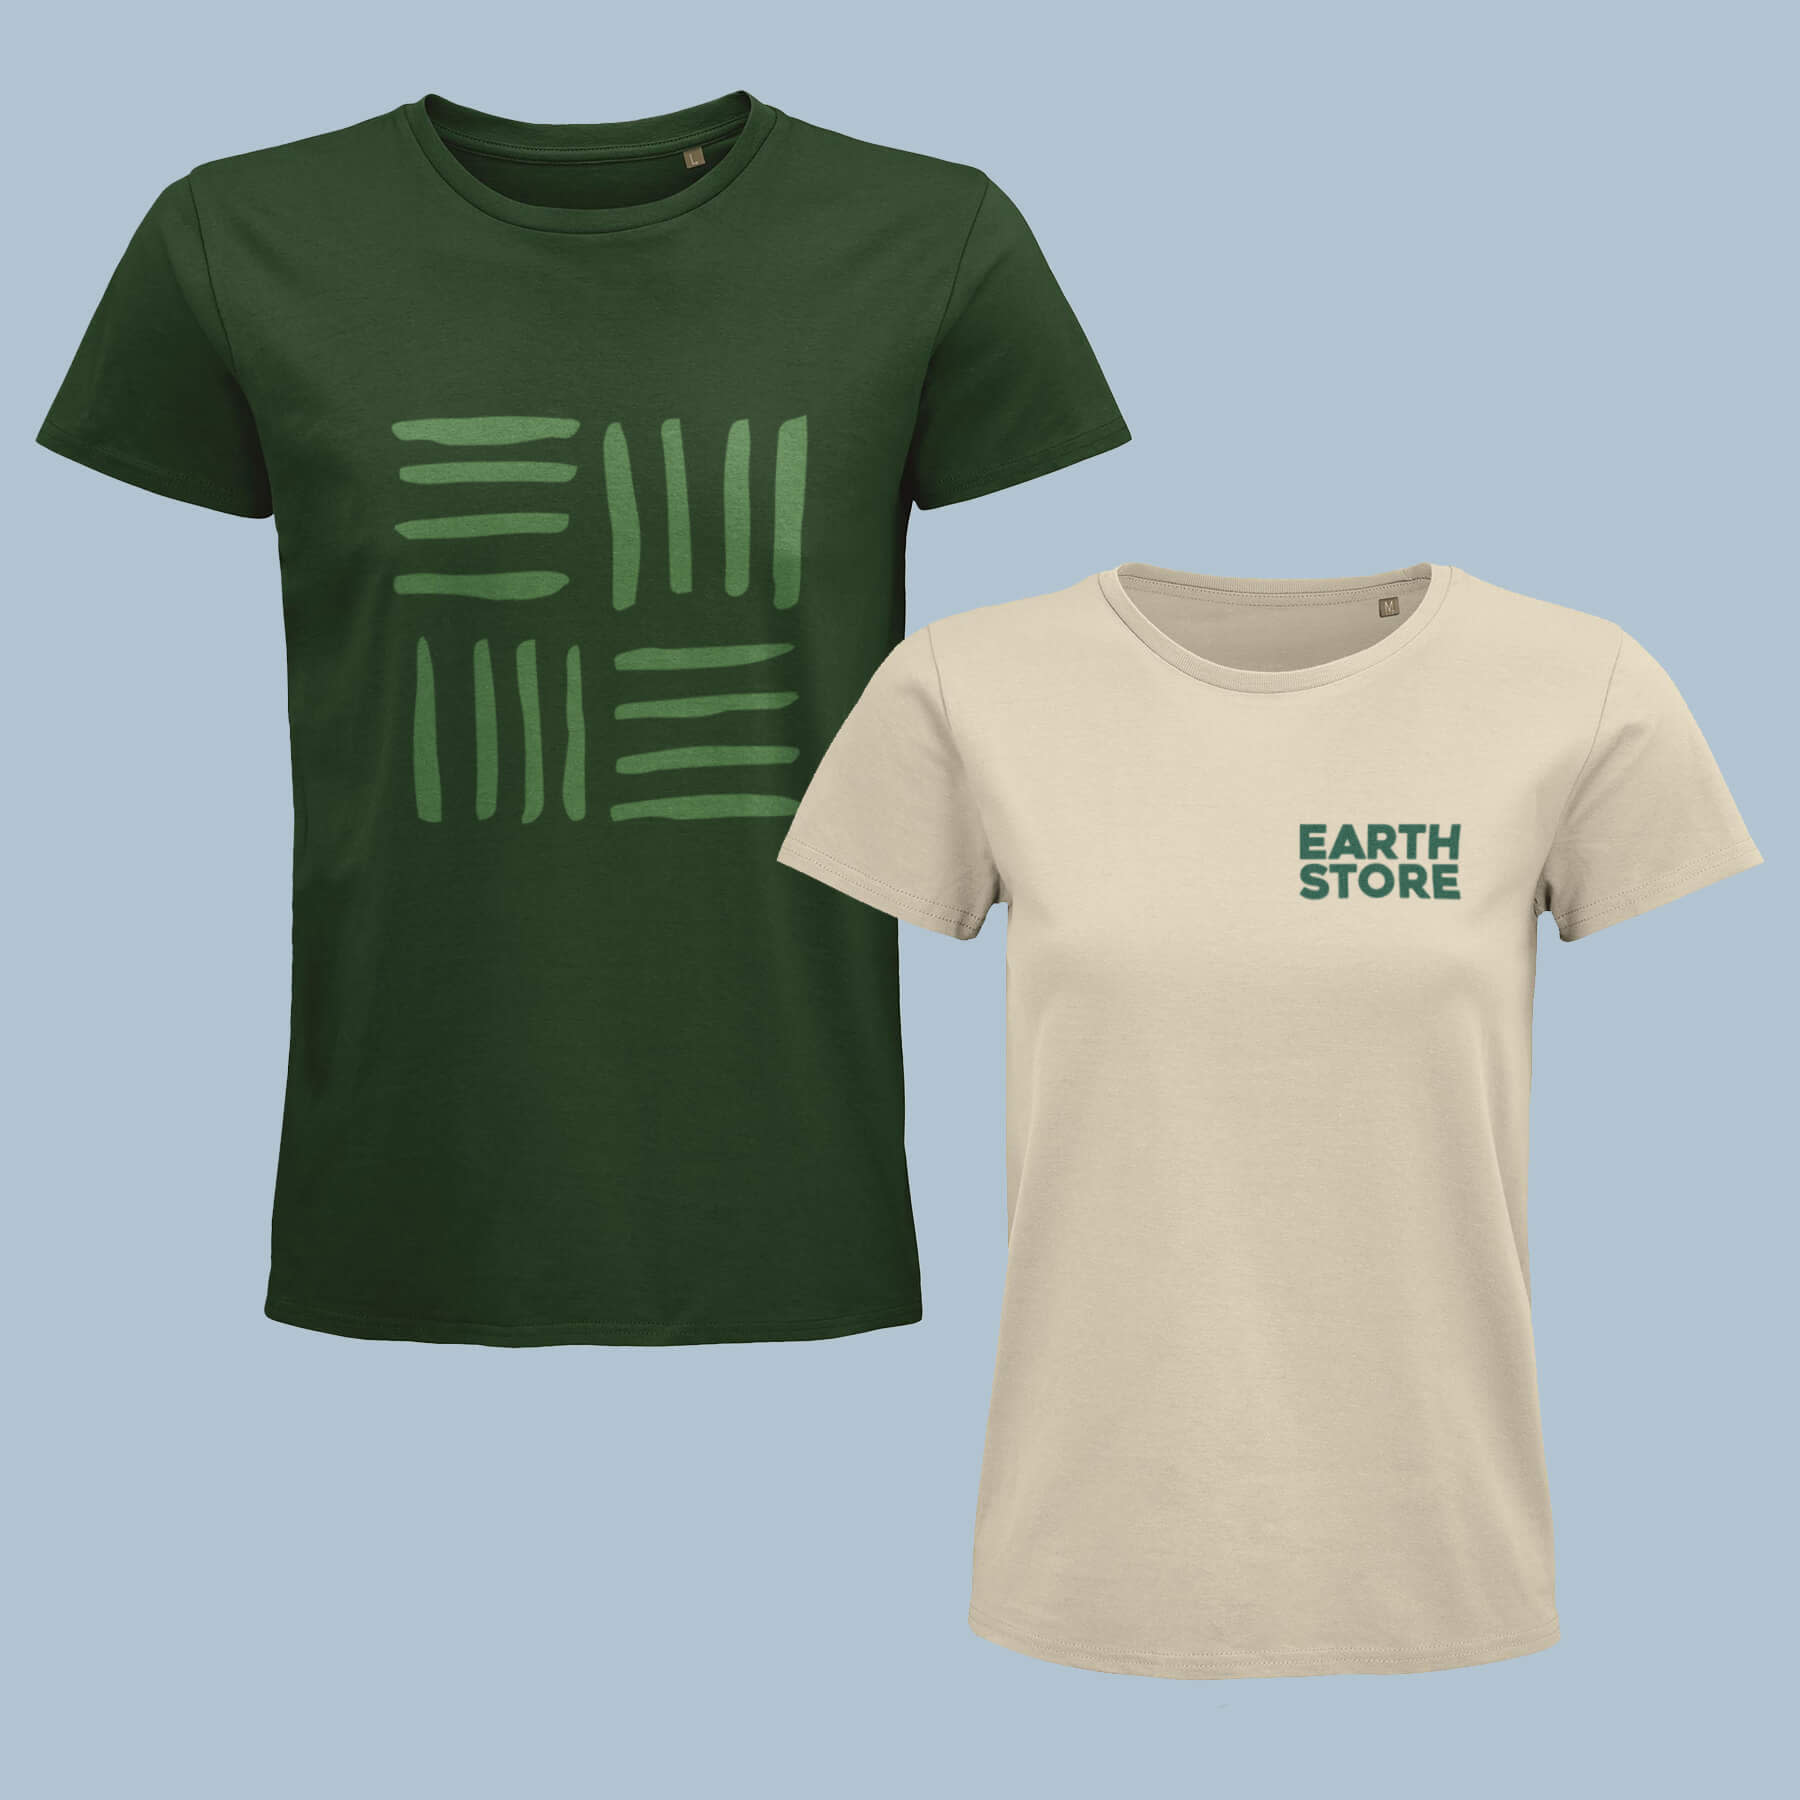 Rand golf gerucht T-shirts bedrukken & ontwerpen - Nieuwe collectie | Printdeal.be